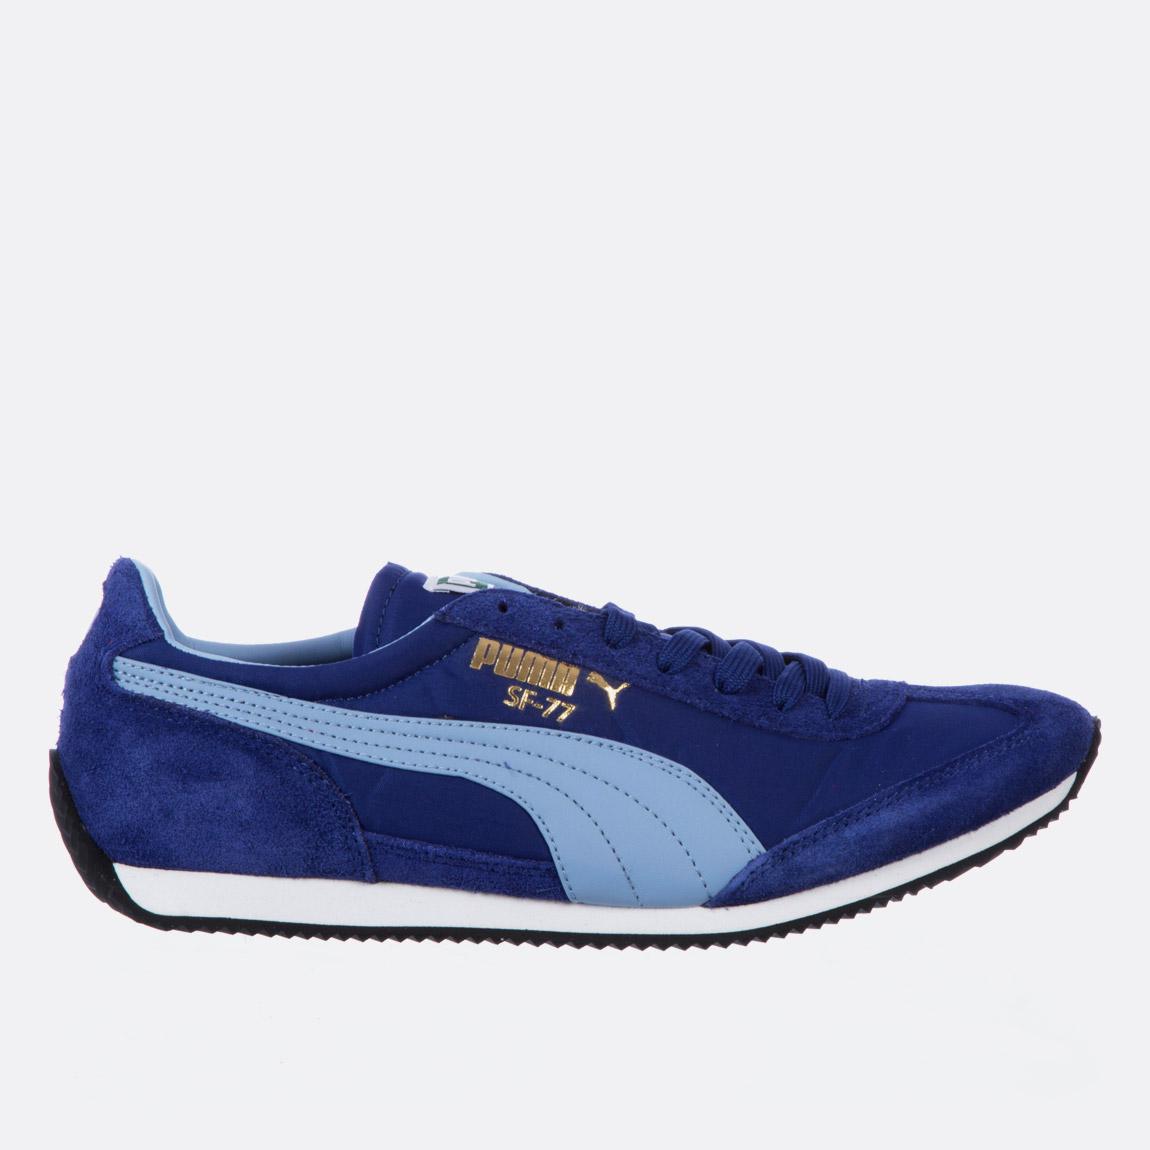 SF77 – Mazarine Blue-Forever Blue PUMA Sneakers | Superbalist.com